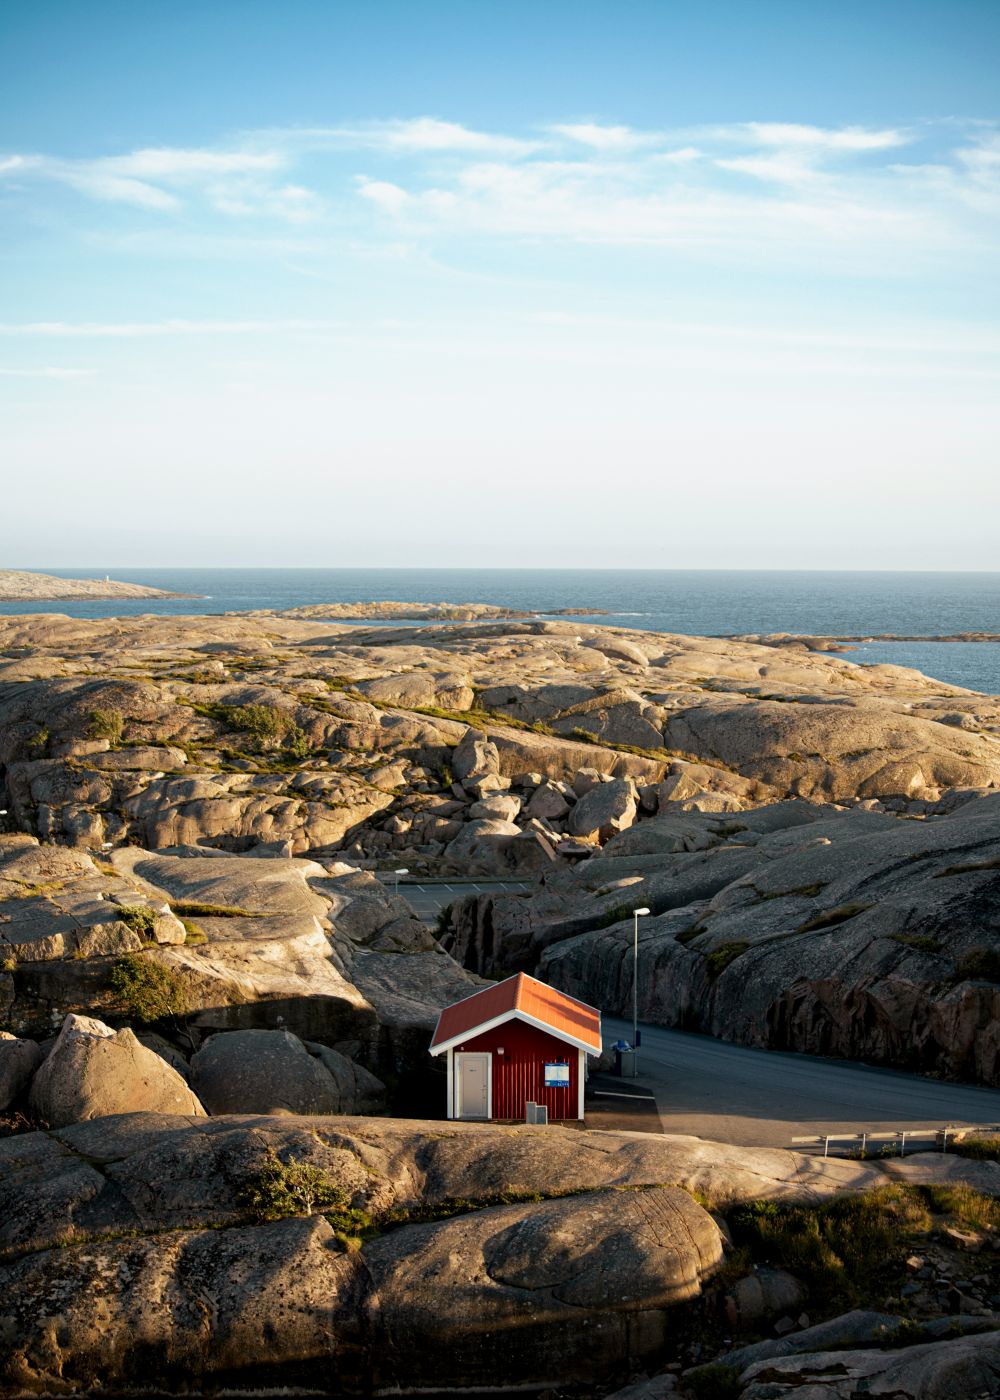 Utforska Marstrandsön: En ö i Bohusläns skärgård